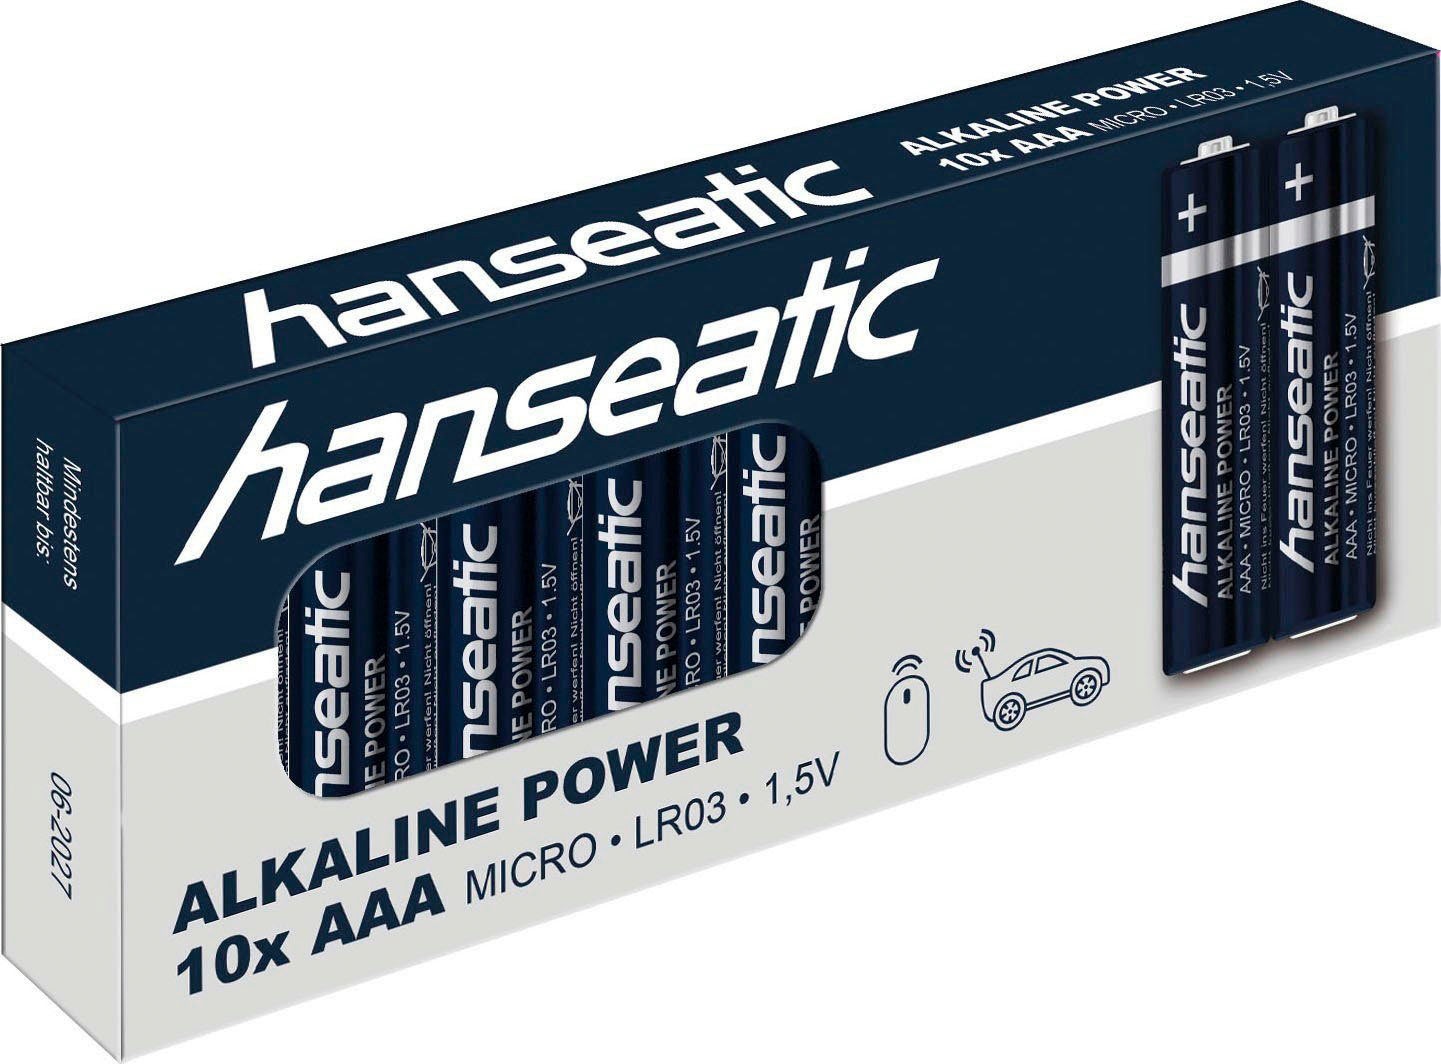 Hanseatic Batterie »100-Stück Alkaline mit Power, XXL Garantie 100 AAA Micro«, LR03, Jahren St.) (Packung, 3